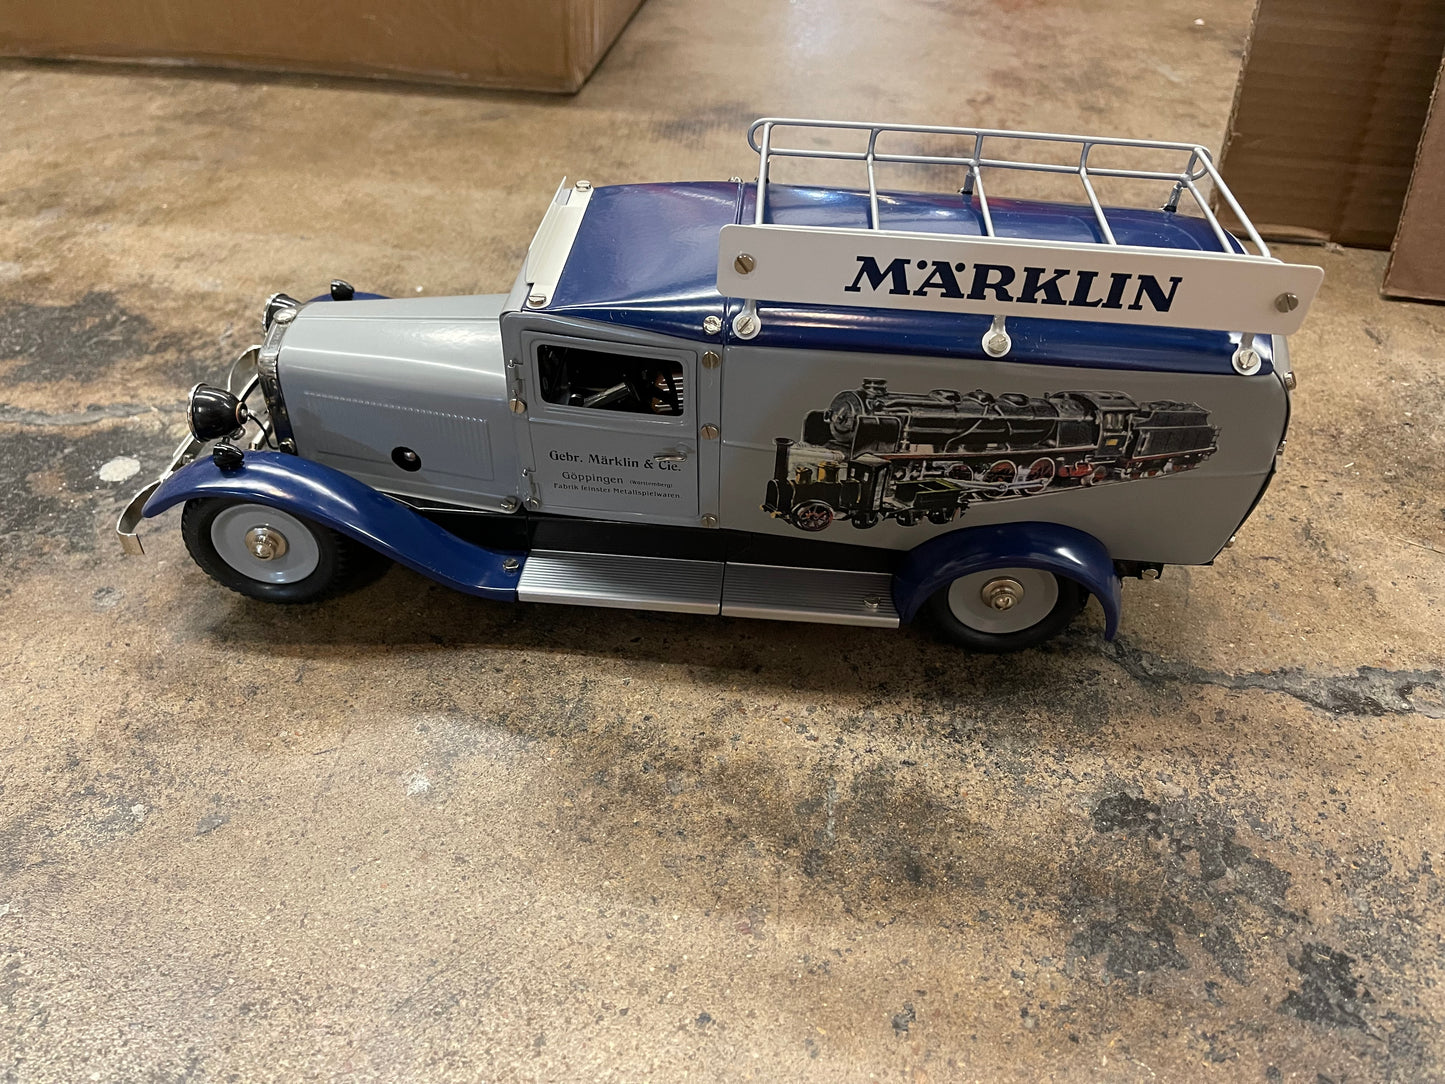 Marklin 19043 - Marklin Model Delivery Truck Replica (demo)